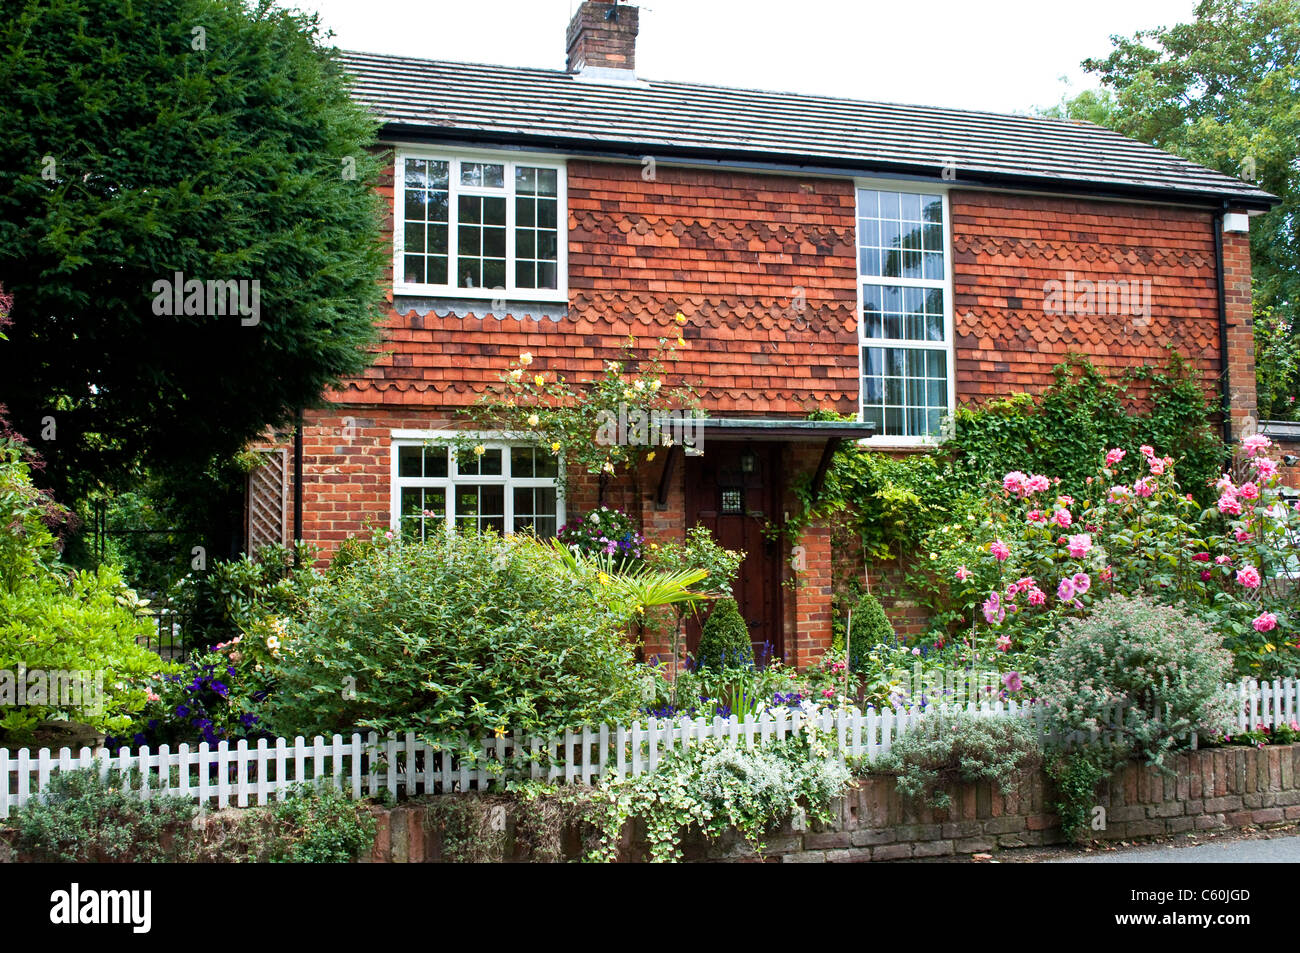 Maison avec façade en briques rouges et jardin de fleurs, Bray, dans le Berkshire, Angleterre, RU Banque D'Images